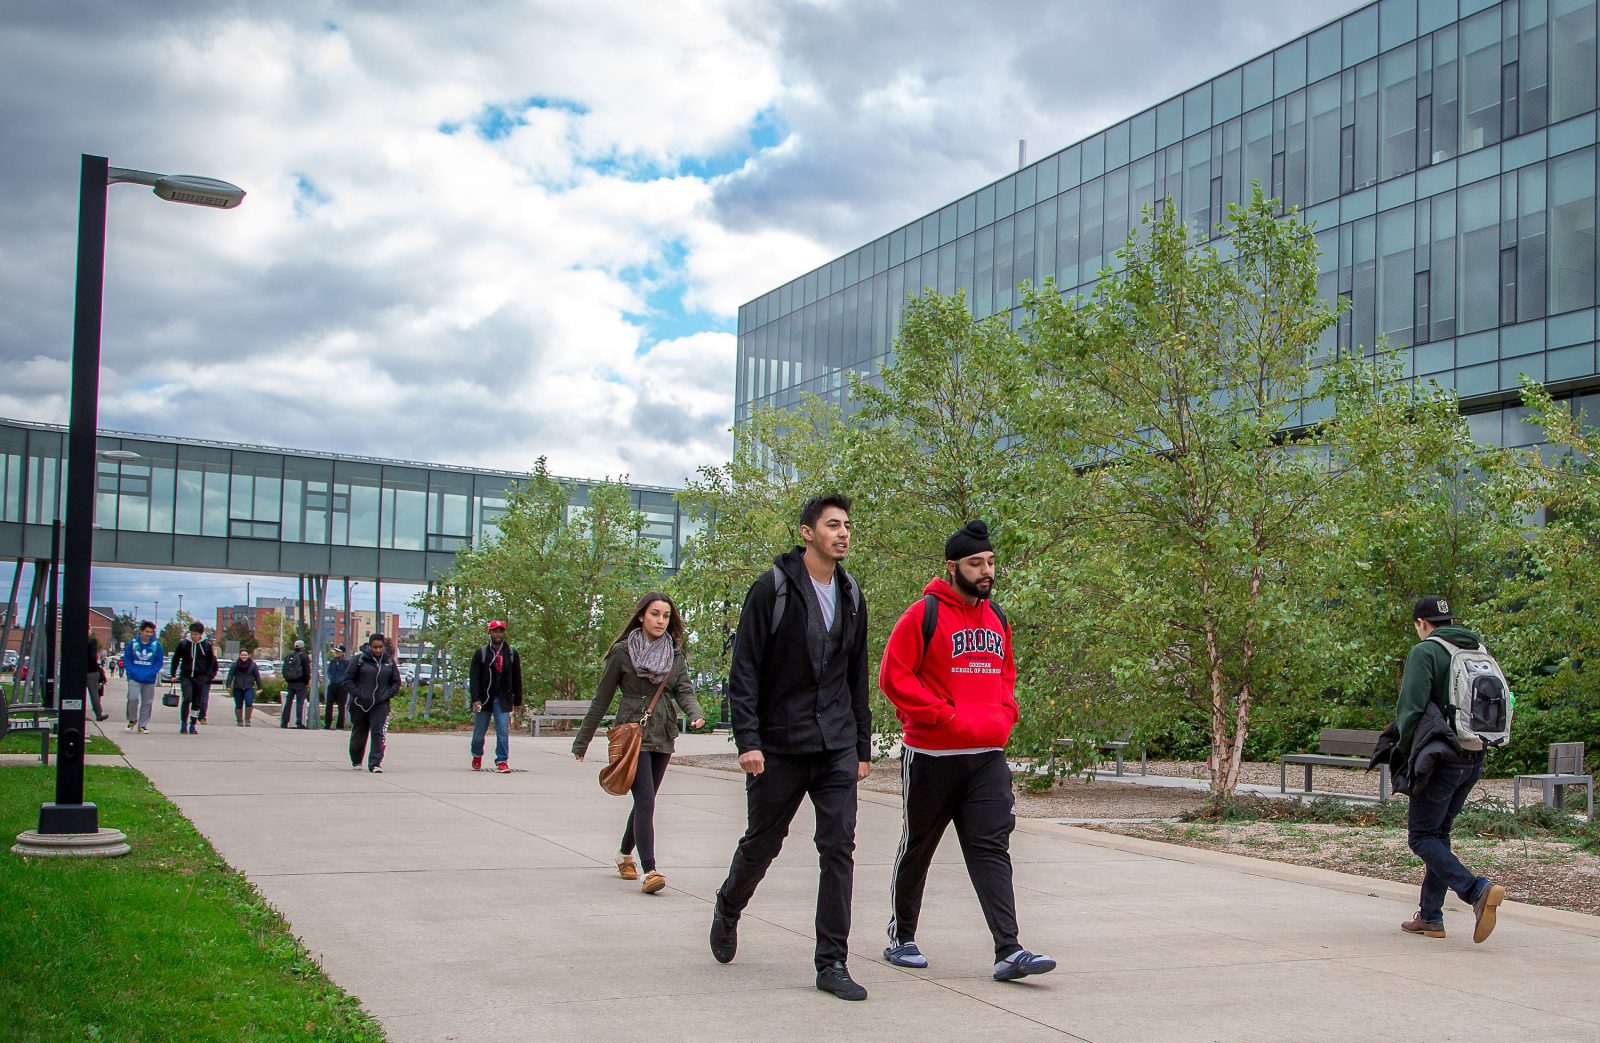 Brock University xứng đáng được đưa vào danh sách chọn lựa khi du học Canada